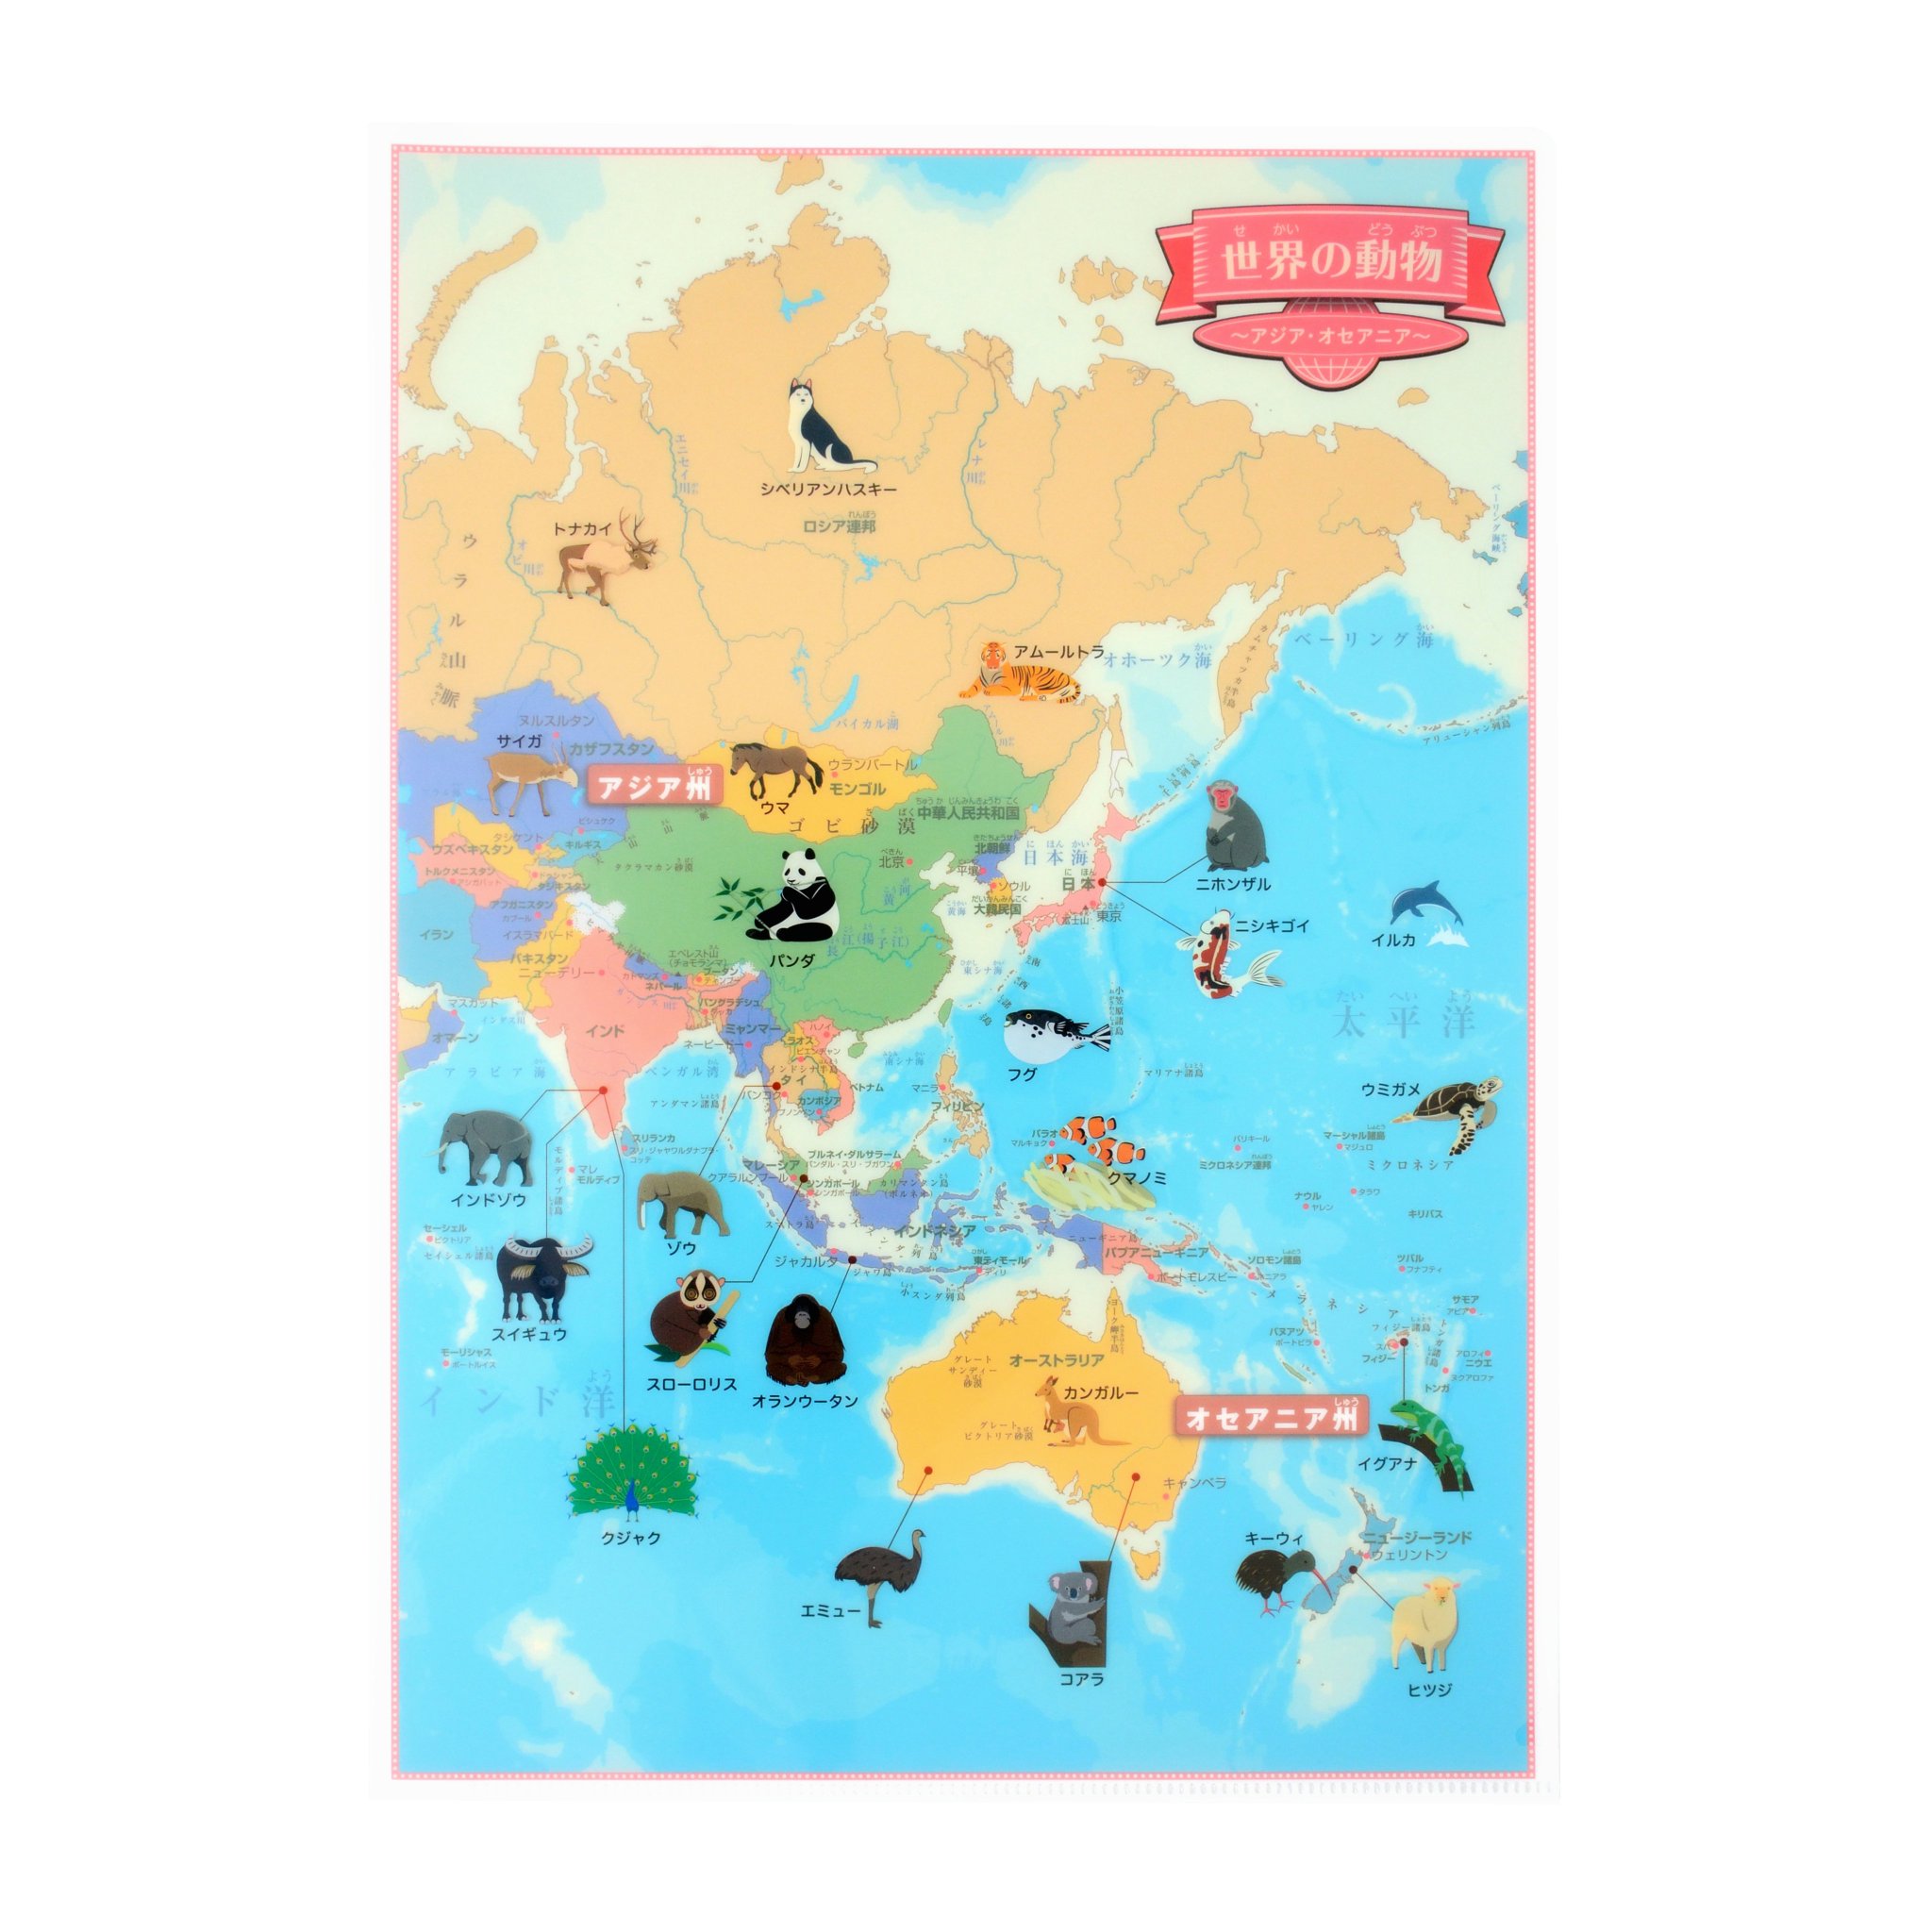 Twitter 上的 東京カートグラフィック 世界の動物のかわいいイラストが載っている本格的な世界地図クリアファイルを販売しています ヨーロッパ アフリカ アジア オセアニア 南北アメリカ ヨーロッパ 拡大 の4枚セットです T Co Un3ou6auex 他にも